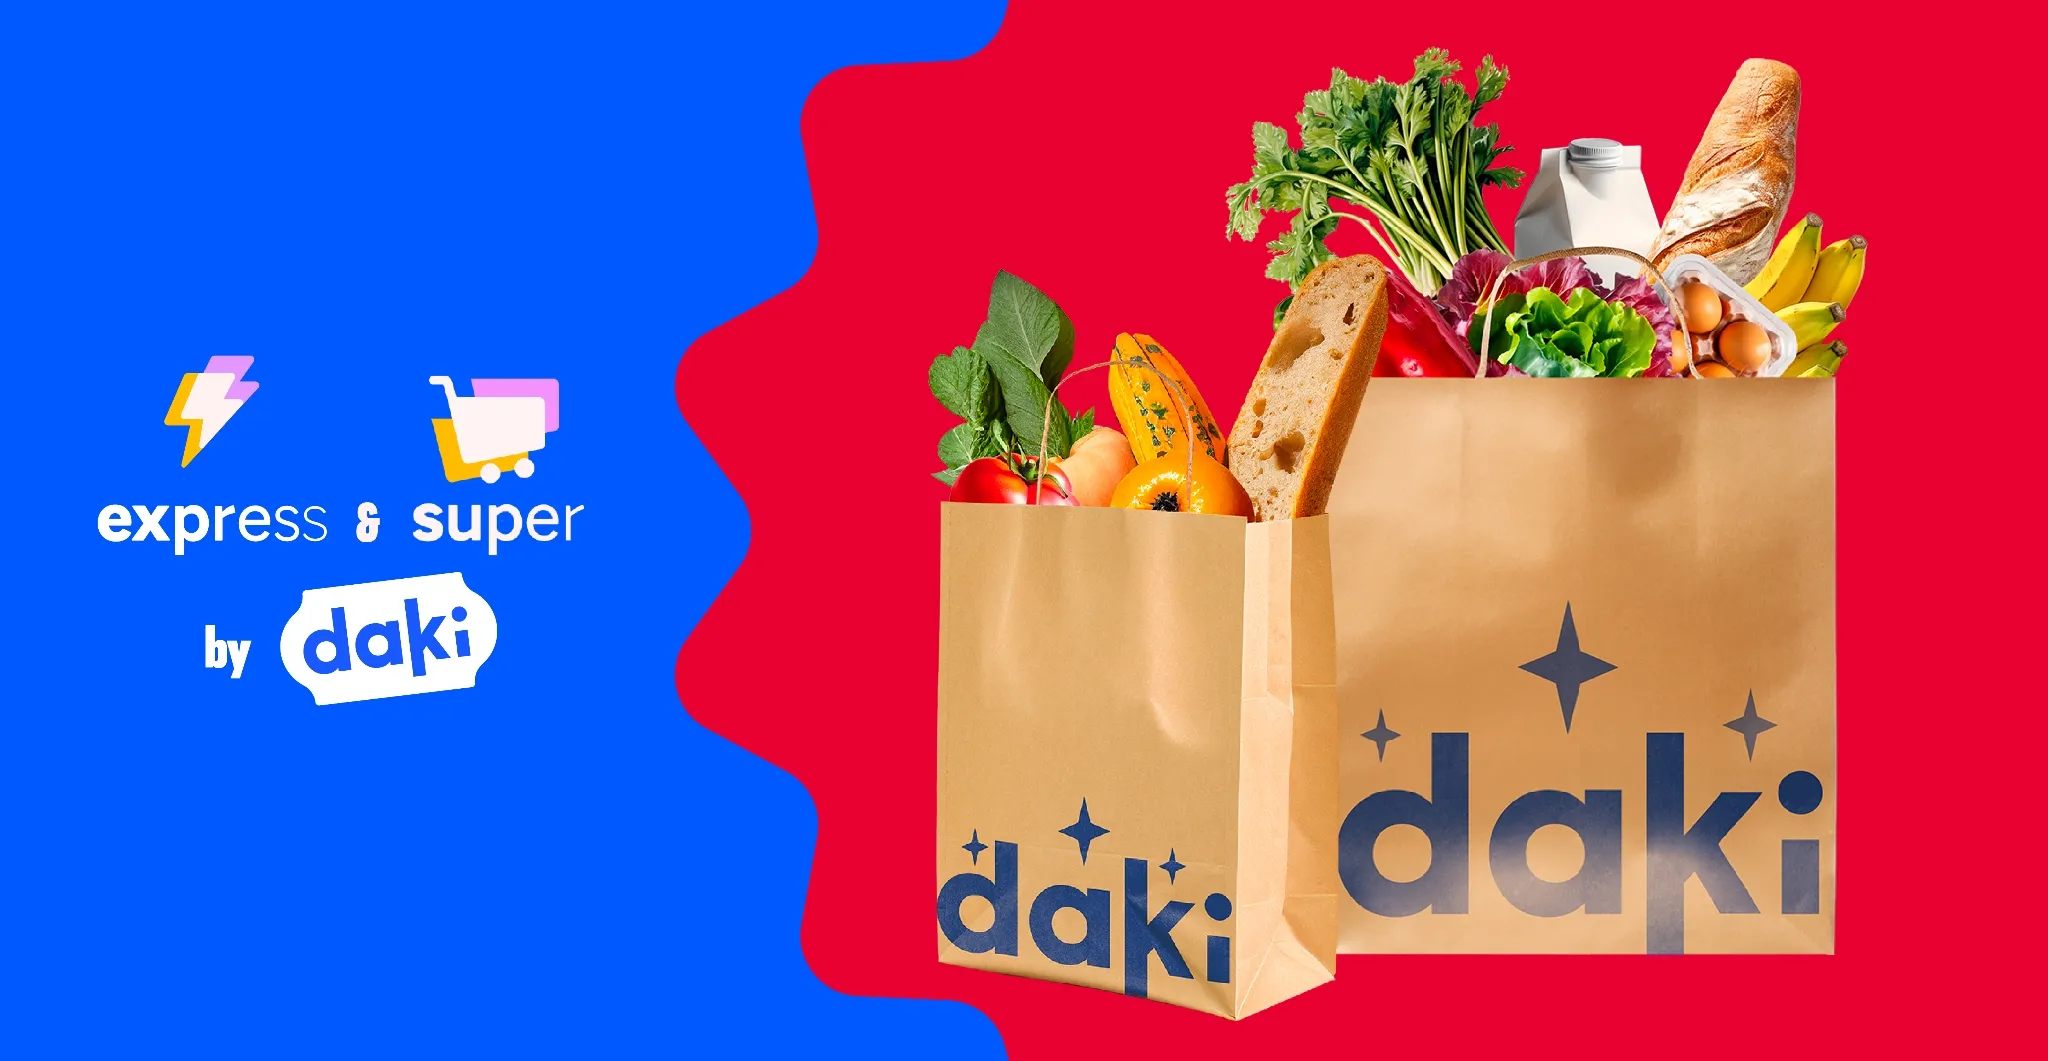 Daki fecha parceria estratégica com iFood e se torna supermercado oficial do app